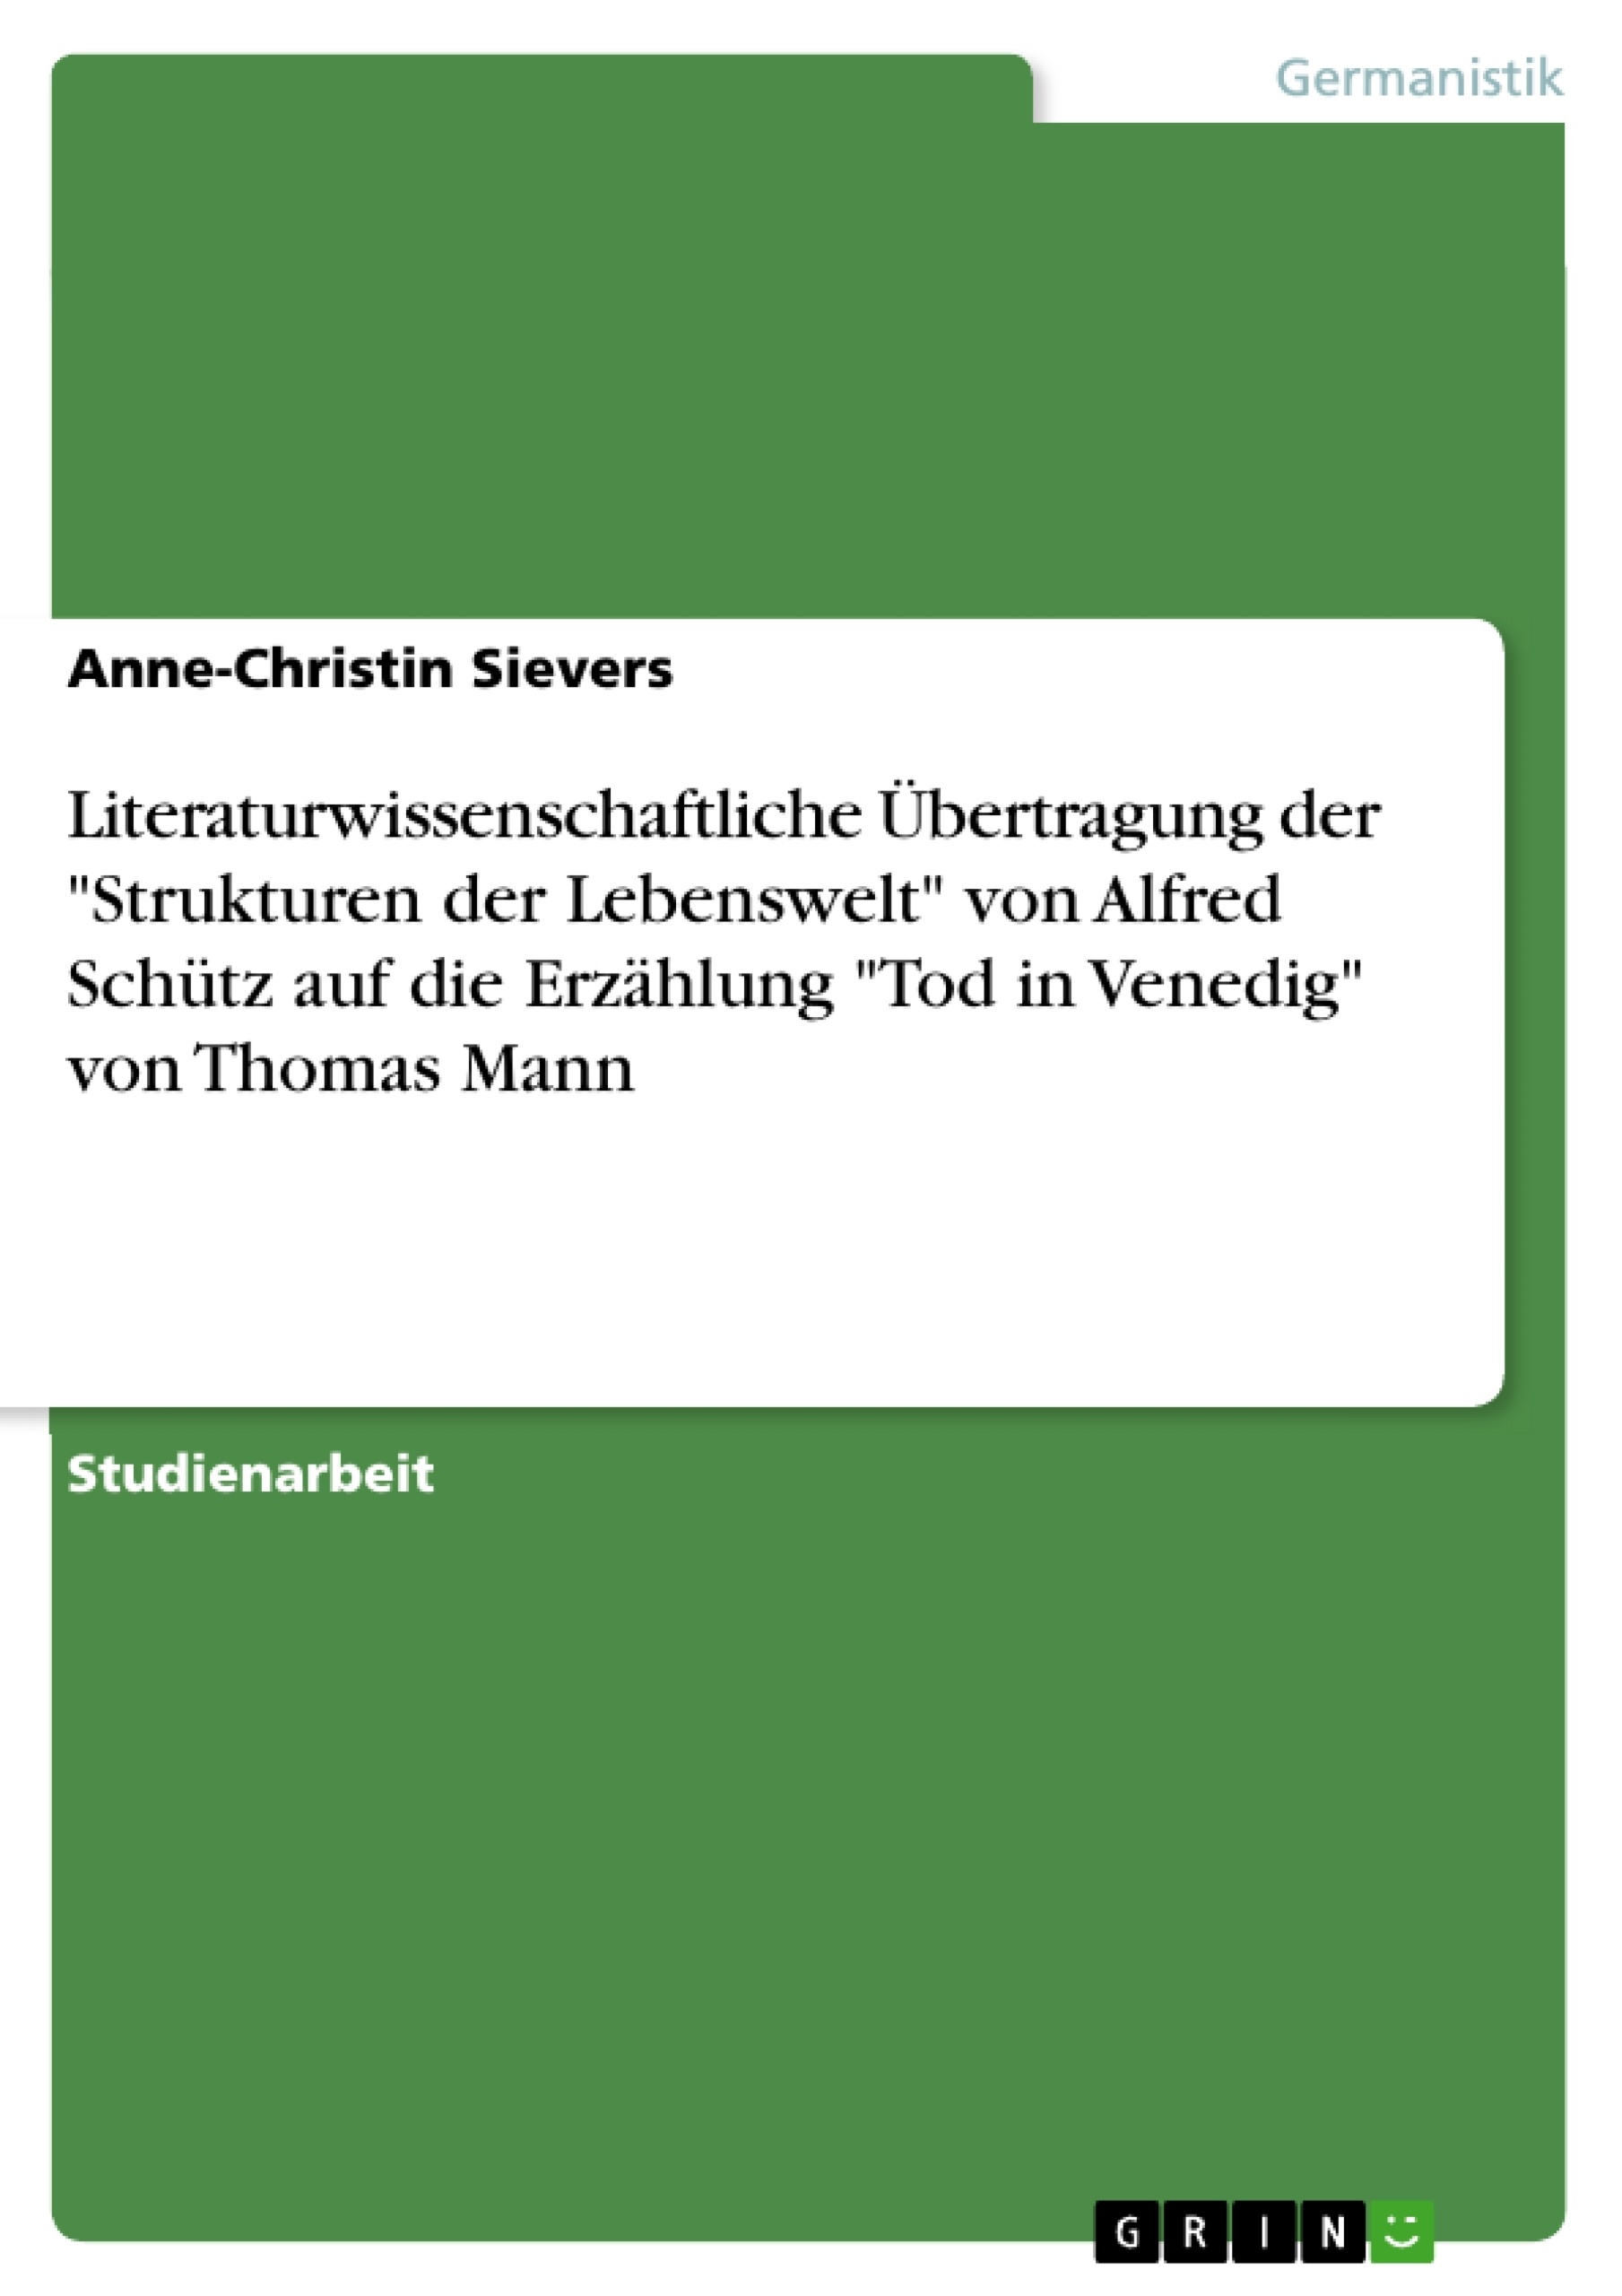 Titel: Literaturwissenschaftliche Übertragung der "Strukturen der Lebenswelt" von Alfred Schütz auf die Erzählung "Tod in Venedig" von Thomas Mann